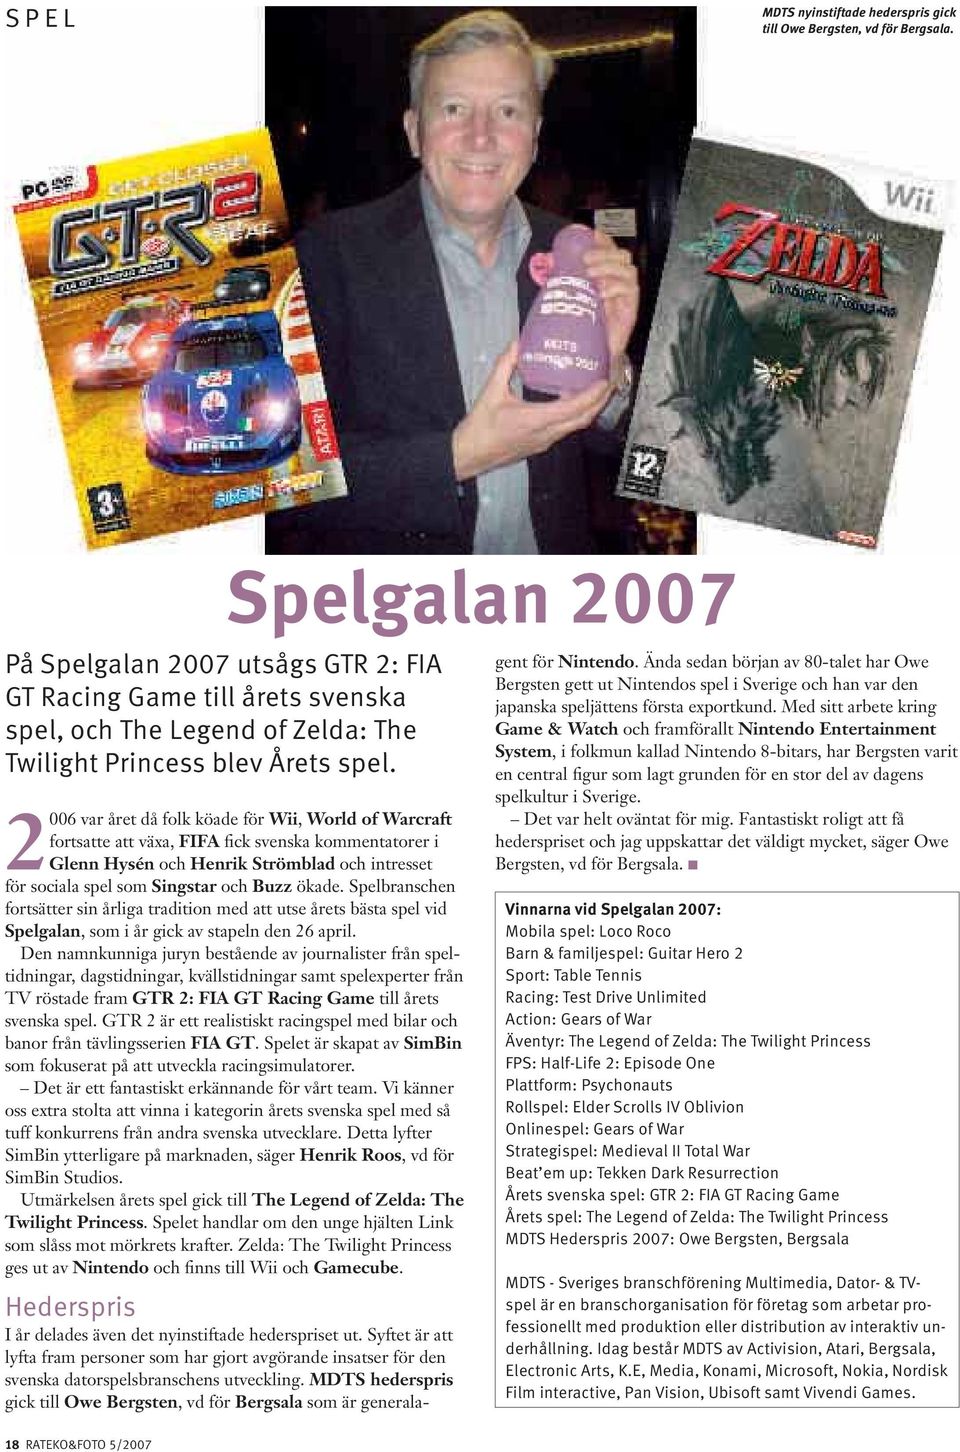 2006 var året då folk köade för Wii, World of Warcraft fortsatte att växa, FIFA fick svenska kommentatorer i Glenn Hysén och Henrik Strömblad och intresset för sociala spel som Singstar och Buzz